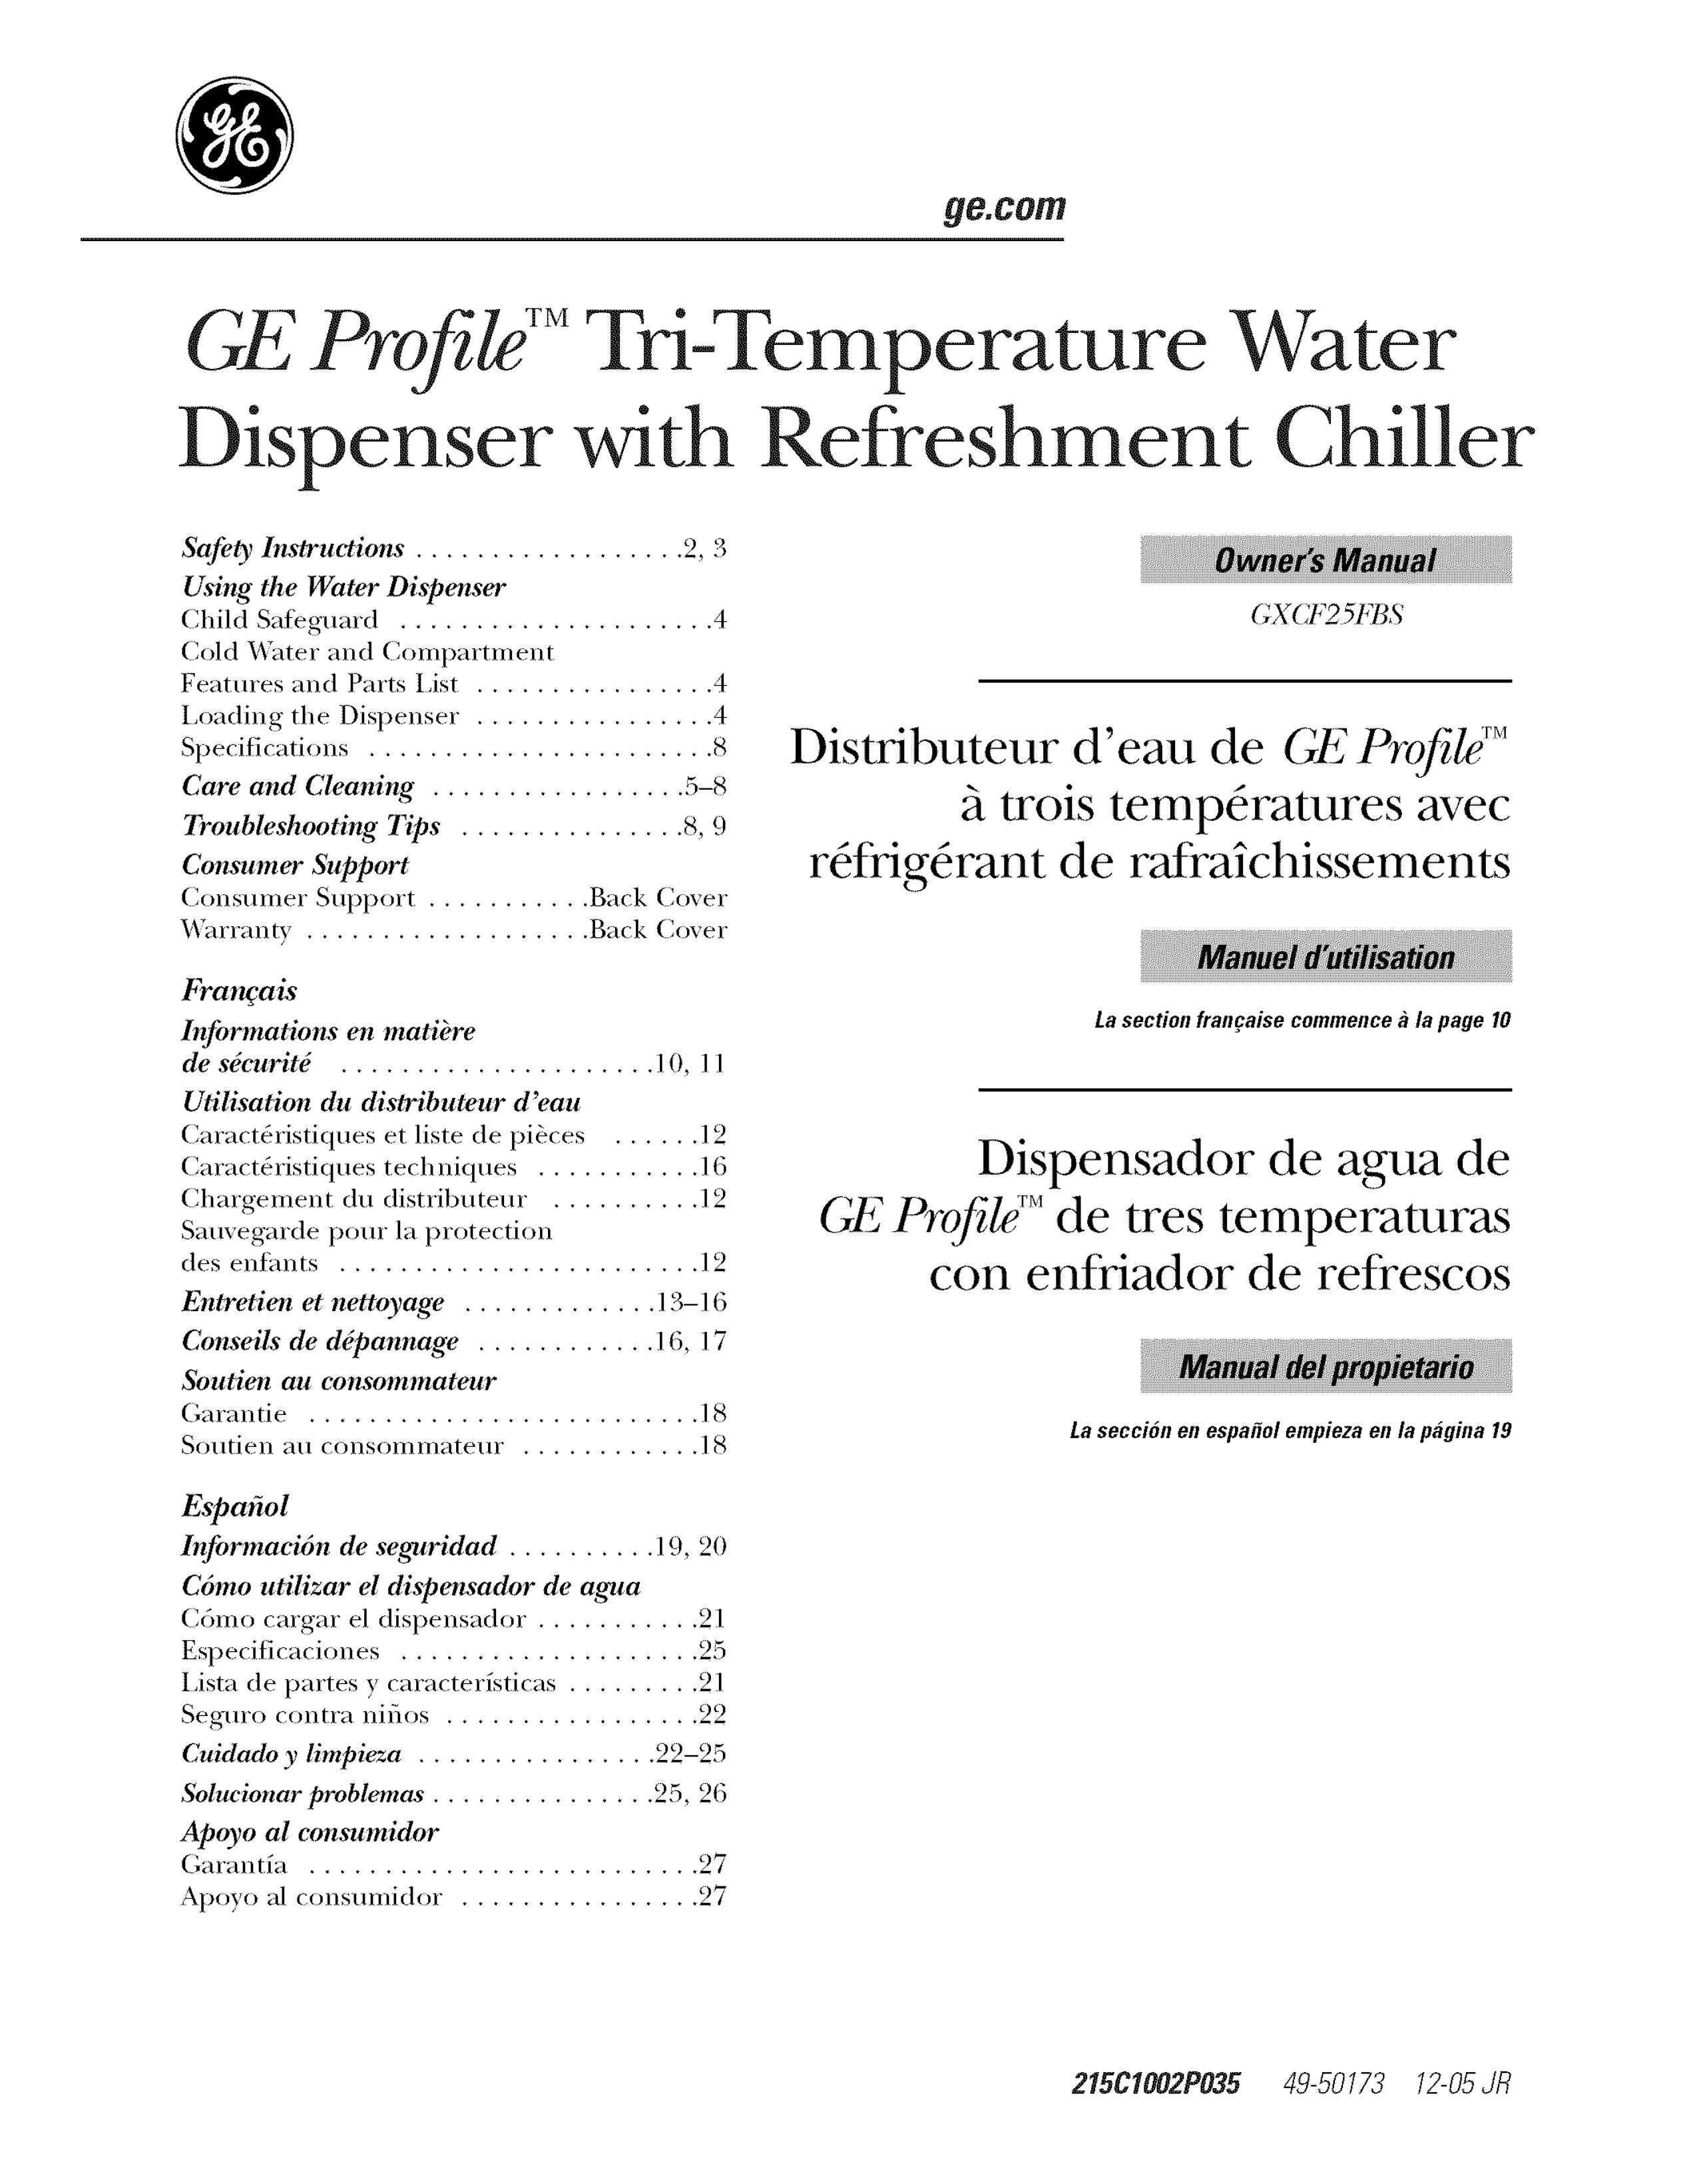 GE GXCF25FBS Water Dispenser User Manual